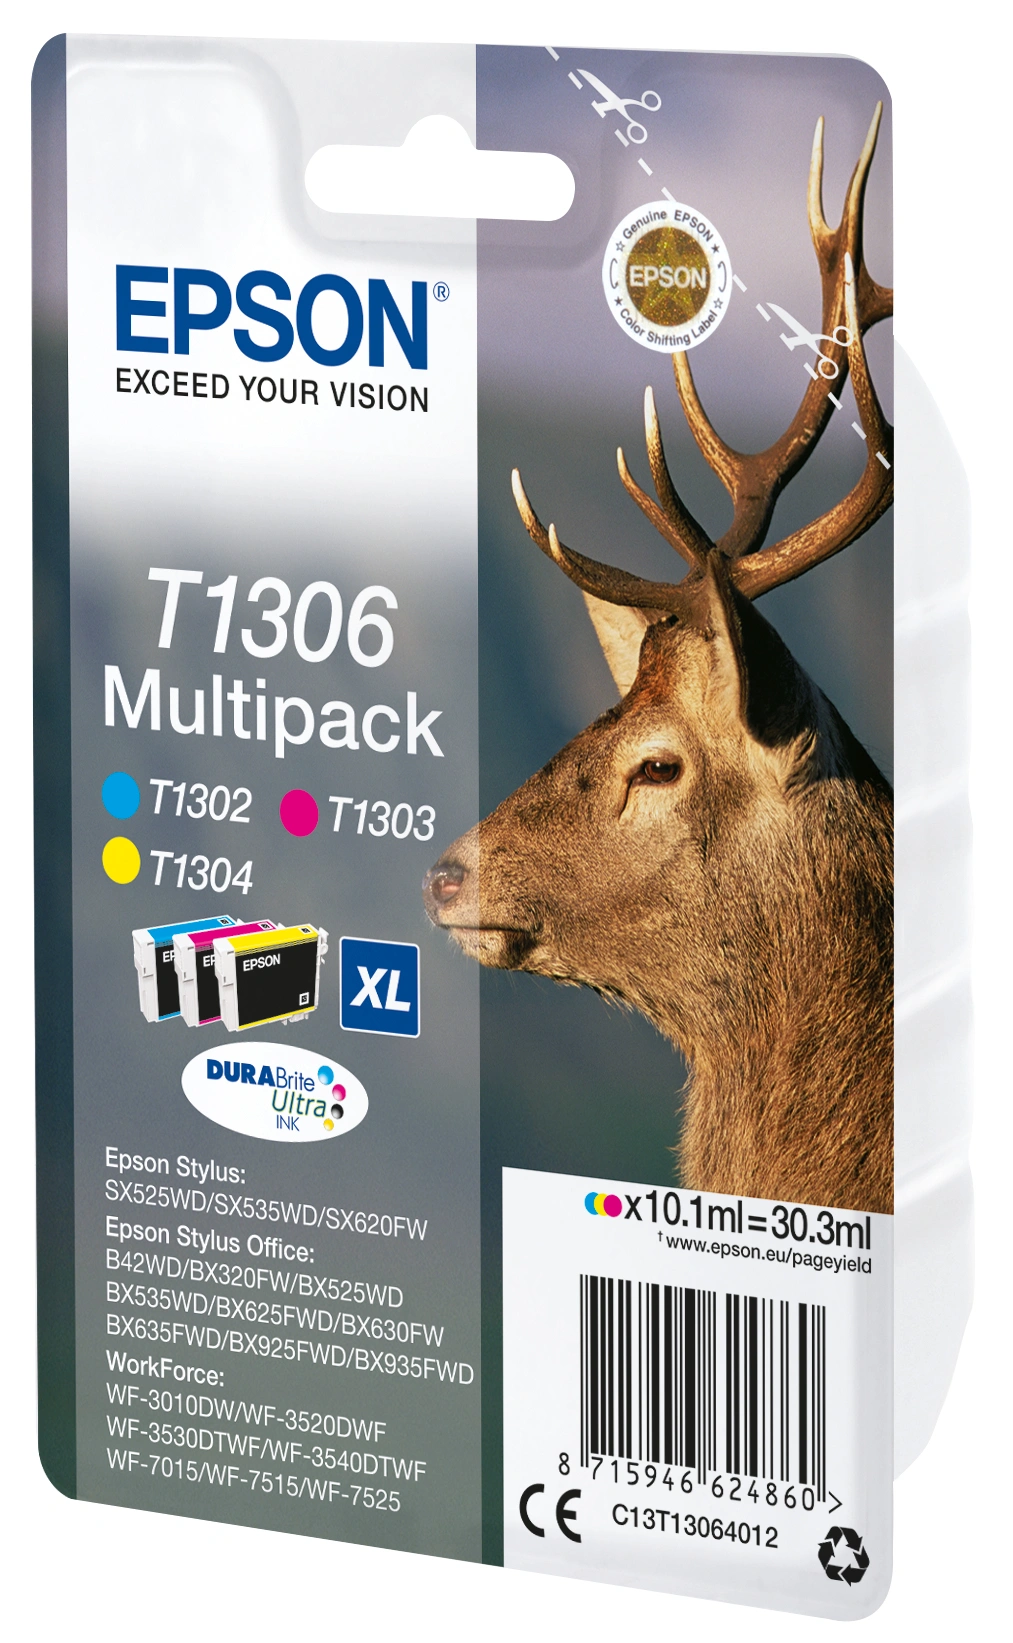 Epson Multipack 3-colours T1306 DURABrite UltraInk (C13T13064012)